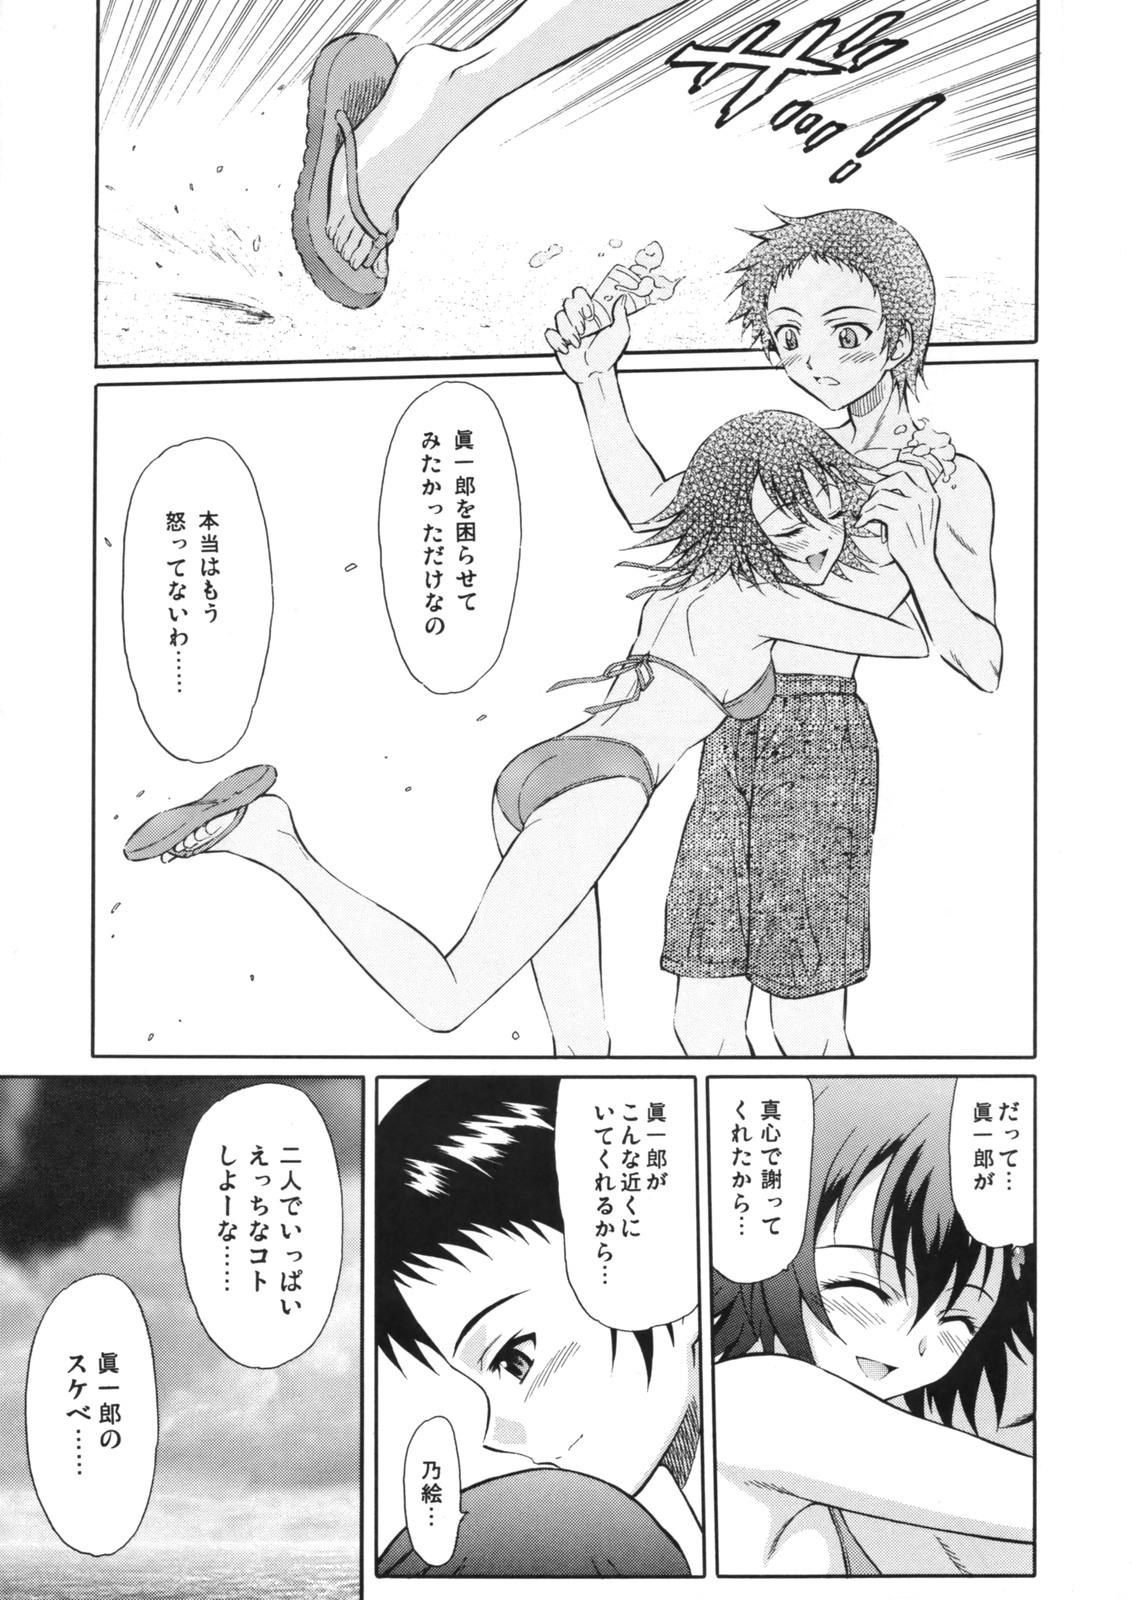 Homemade Tenshi no Namida 2 - True tears Mamando - Page 4